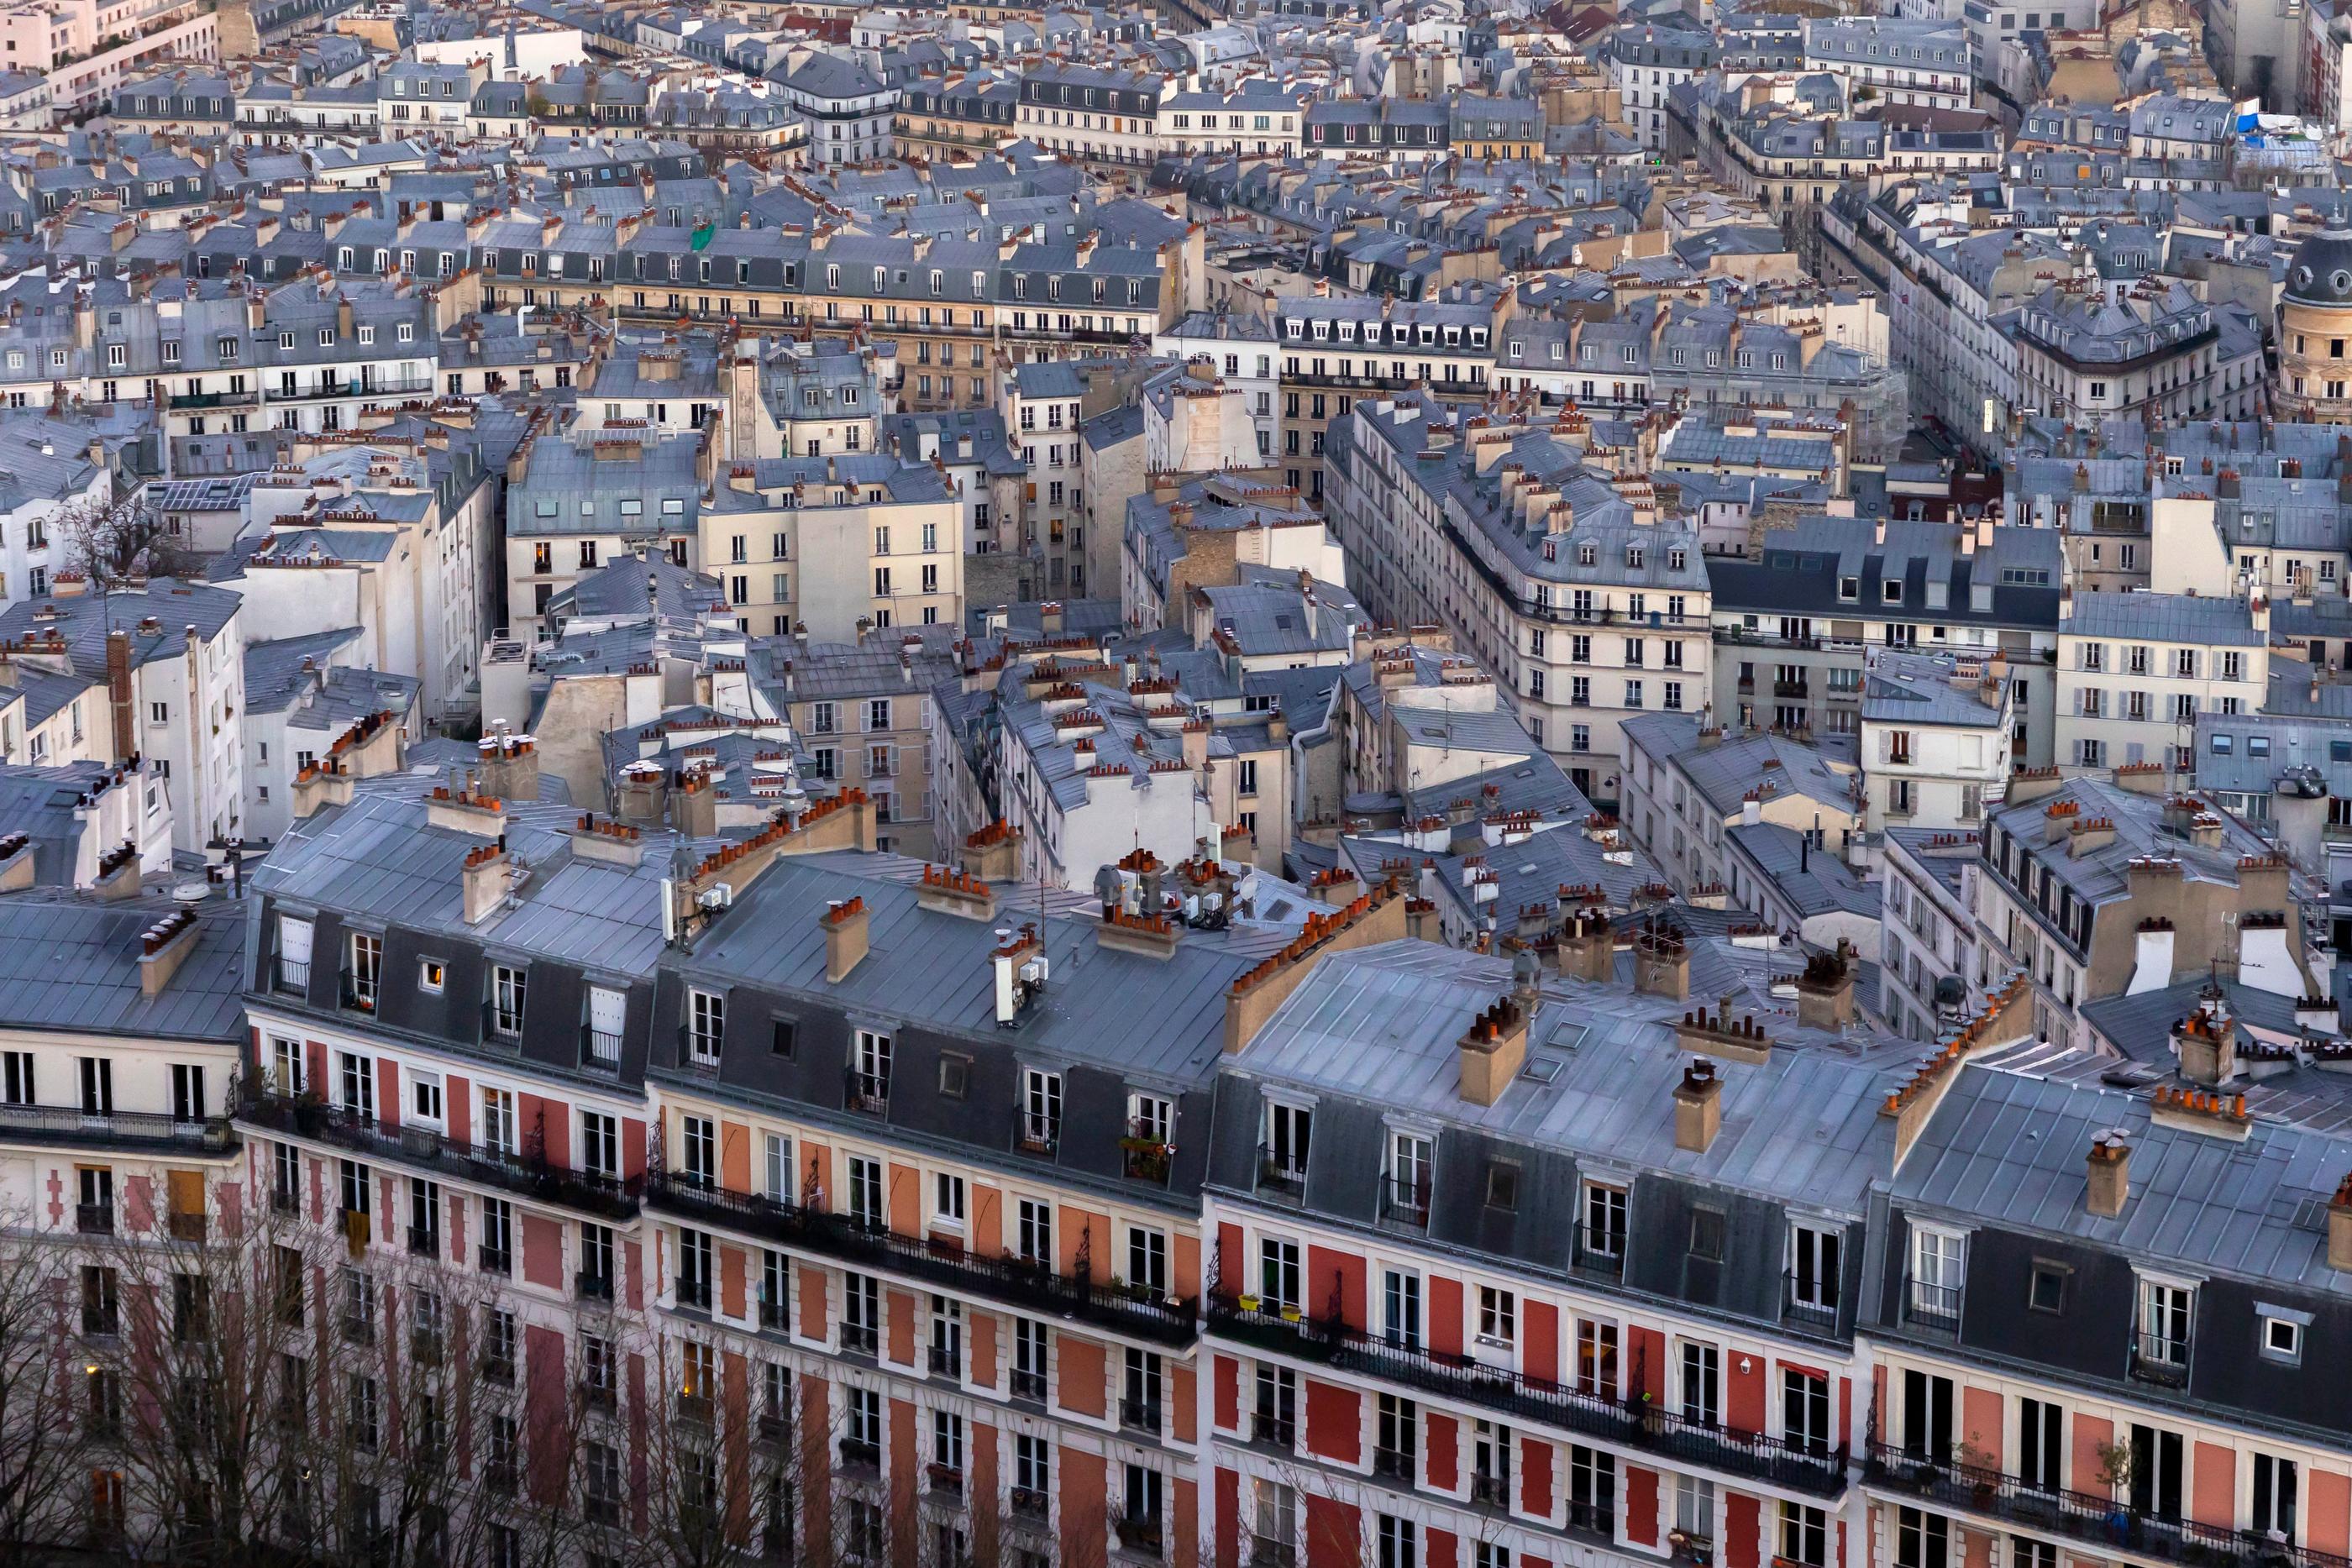 À 10 208 €/m2 en moyenne, le prix des appartements parisiens a atteint son plus bas niveau depuis la fin 2019. Mais il semble stopper sa baisse et pourrait bien remonter lentement dans les mois qui viennent. Vincent Isore/IP3